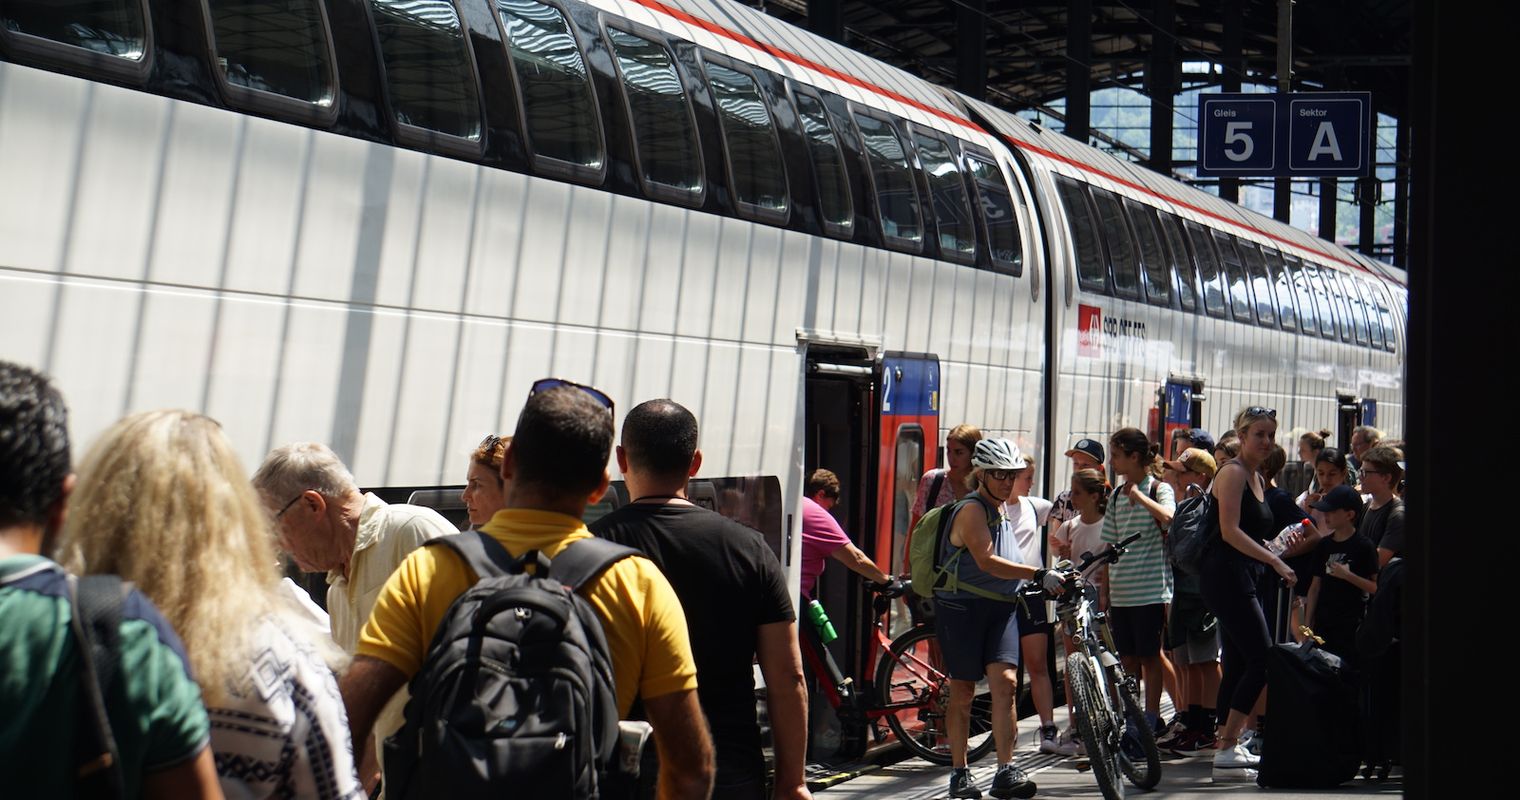 SBB-Kontrolleur findet ausgebüxten Teenager im Zürich-Zug